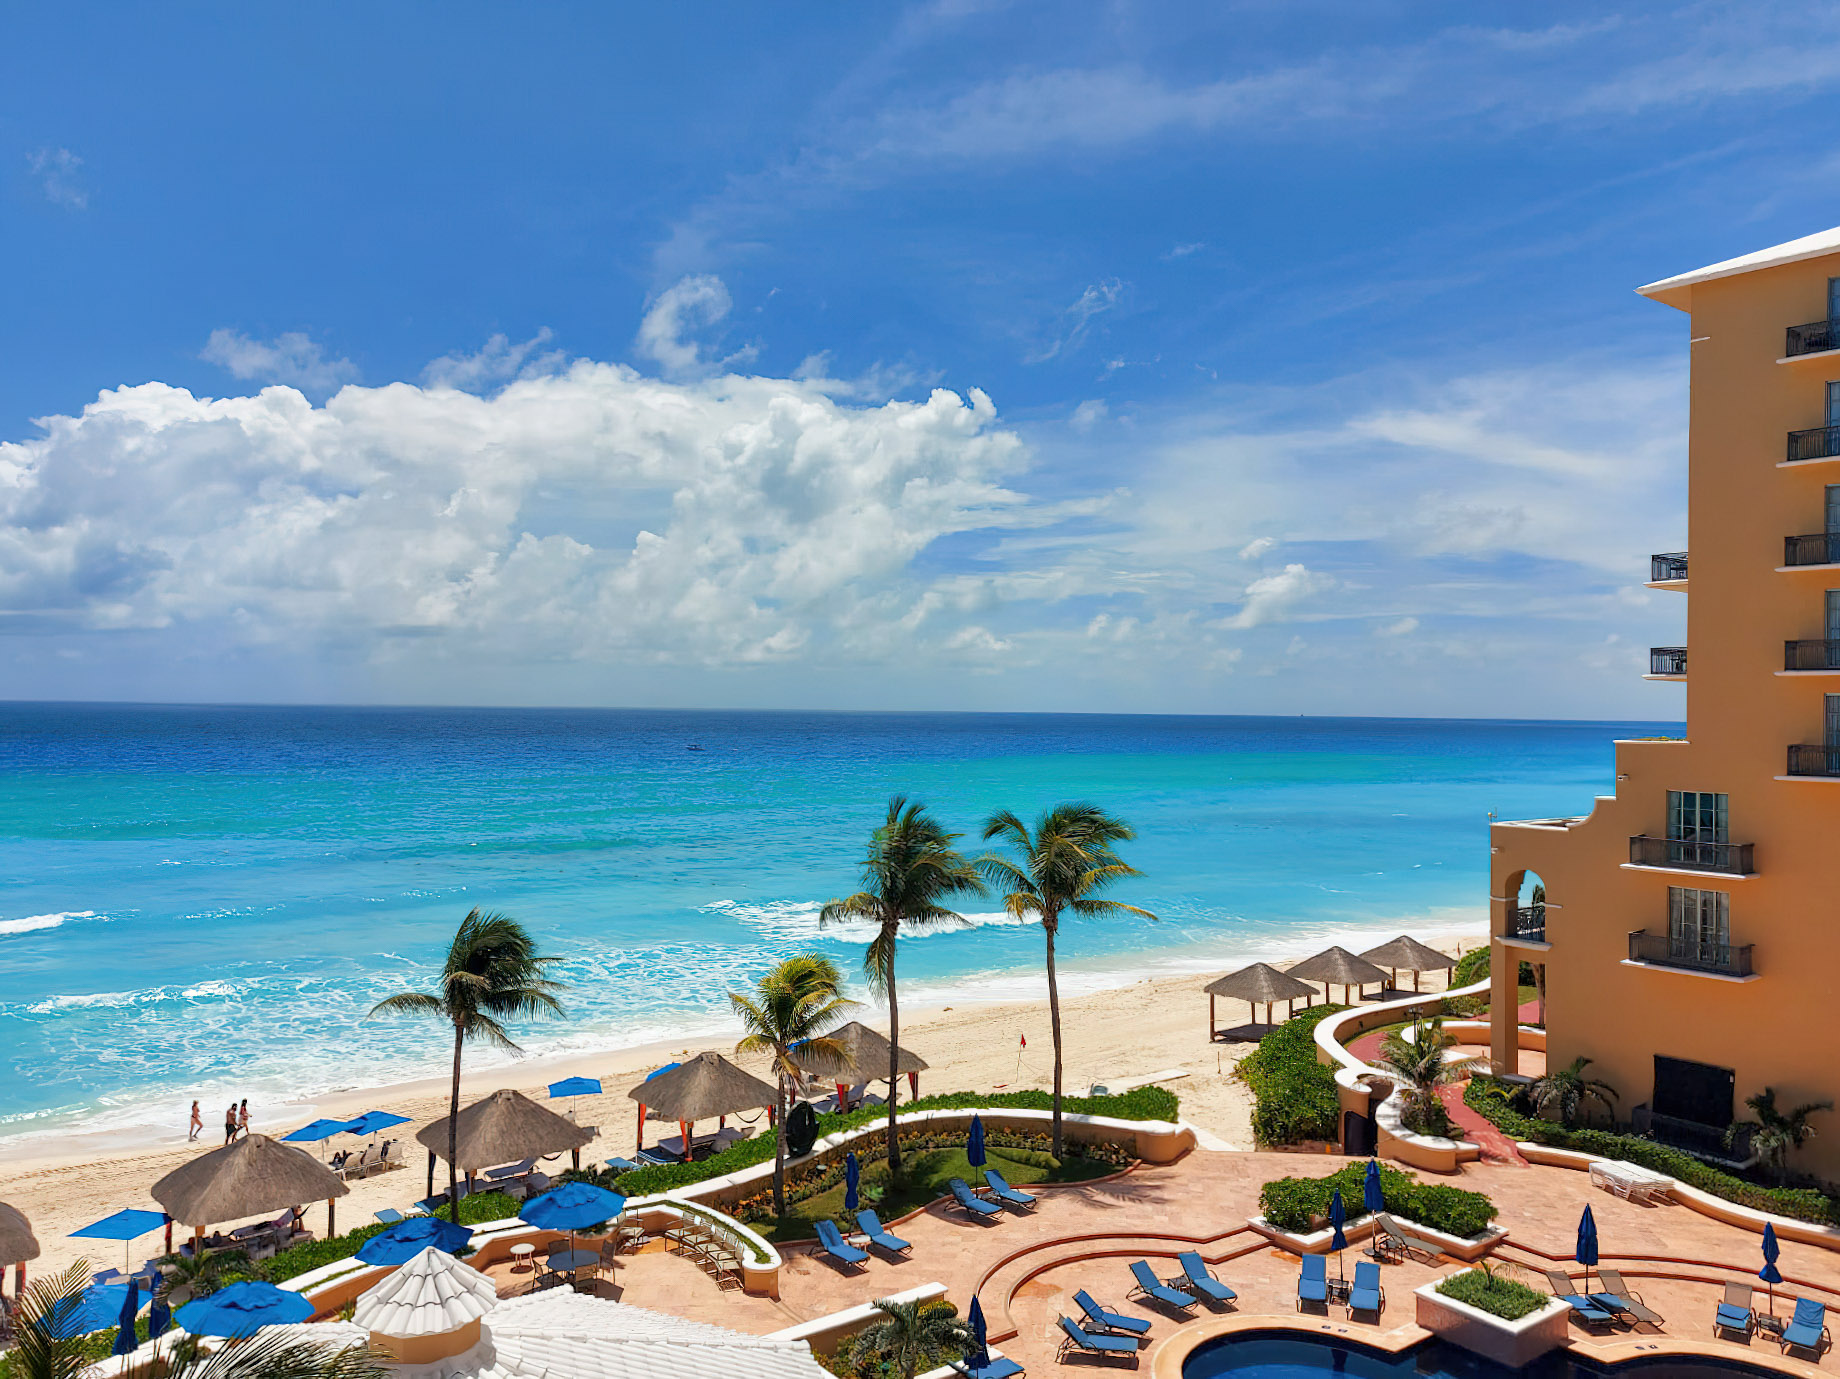 The Ritz-Carlton, Cancun Resort – Cancun, Mexico – Beach and Ocean View Aerial